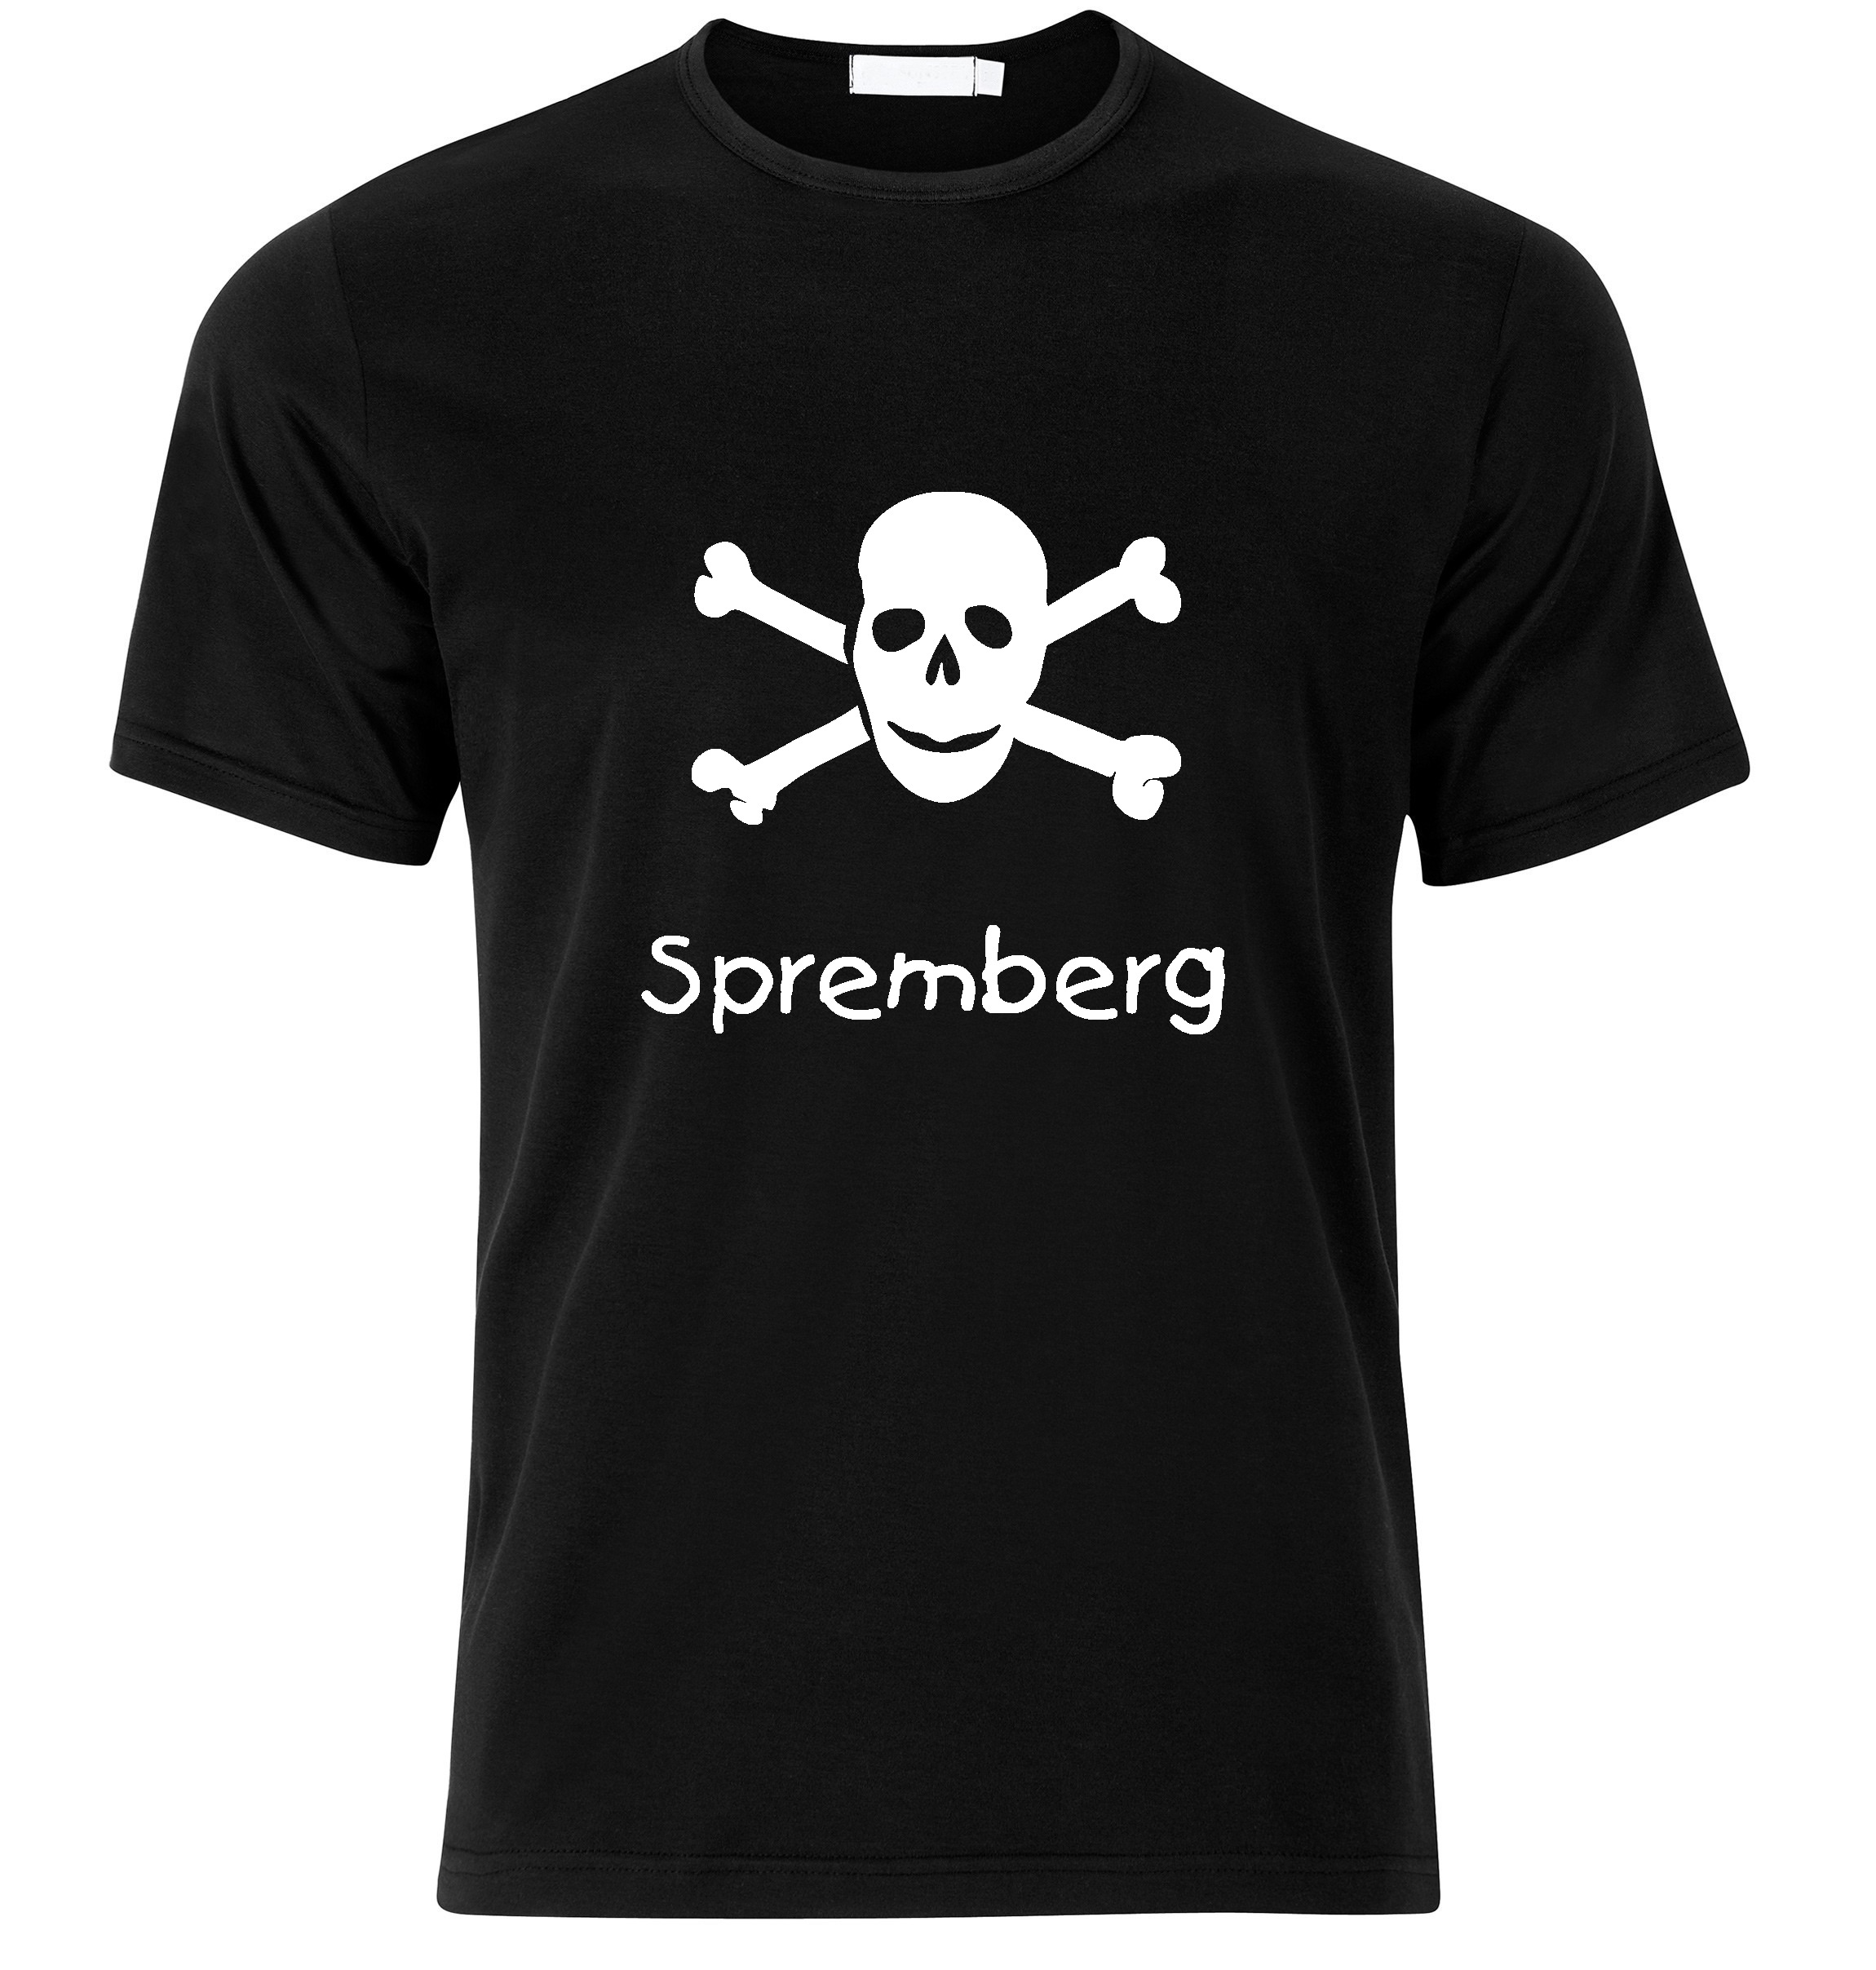 T-Shirt Spremberg Jolly Roger, Totenkopf